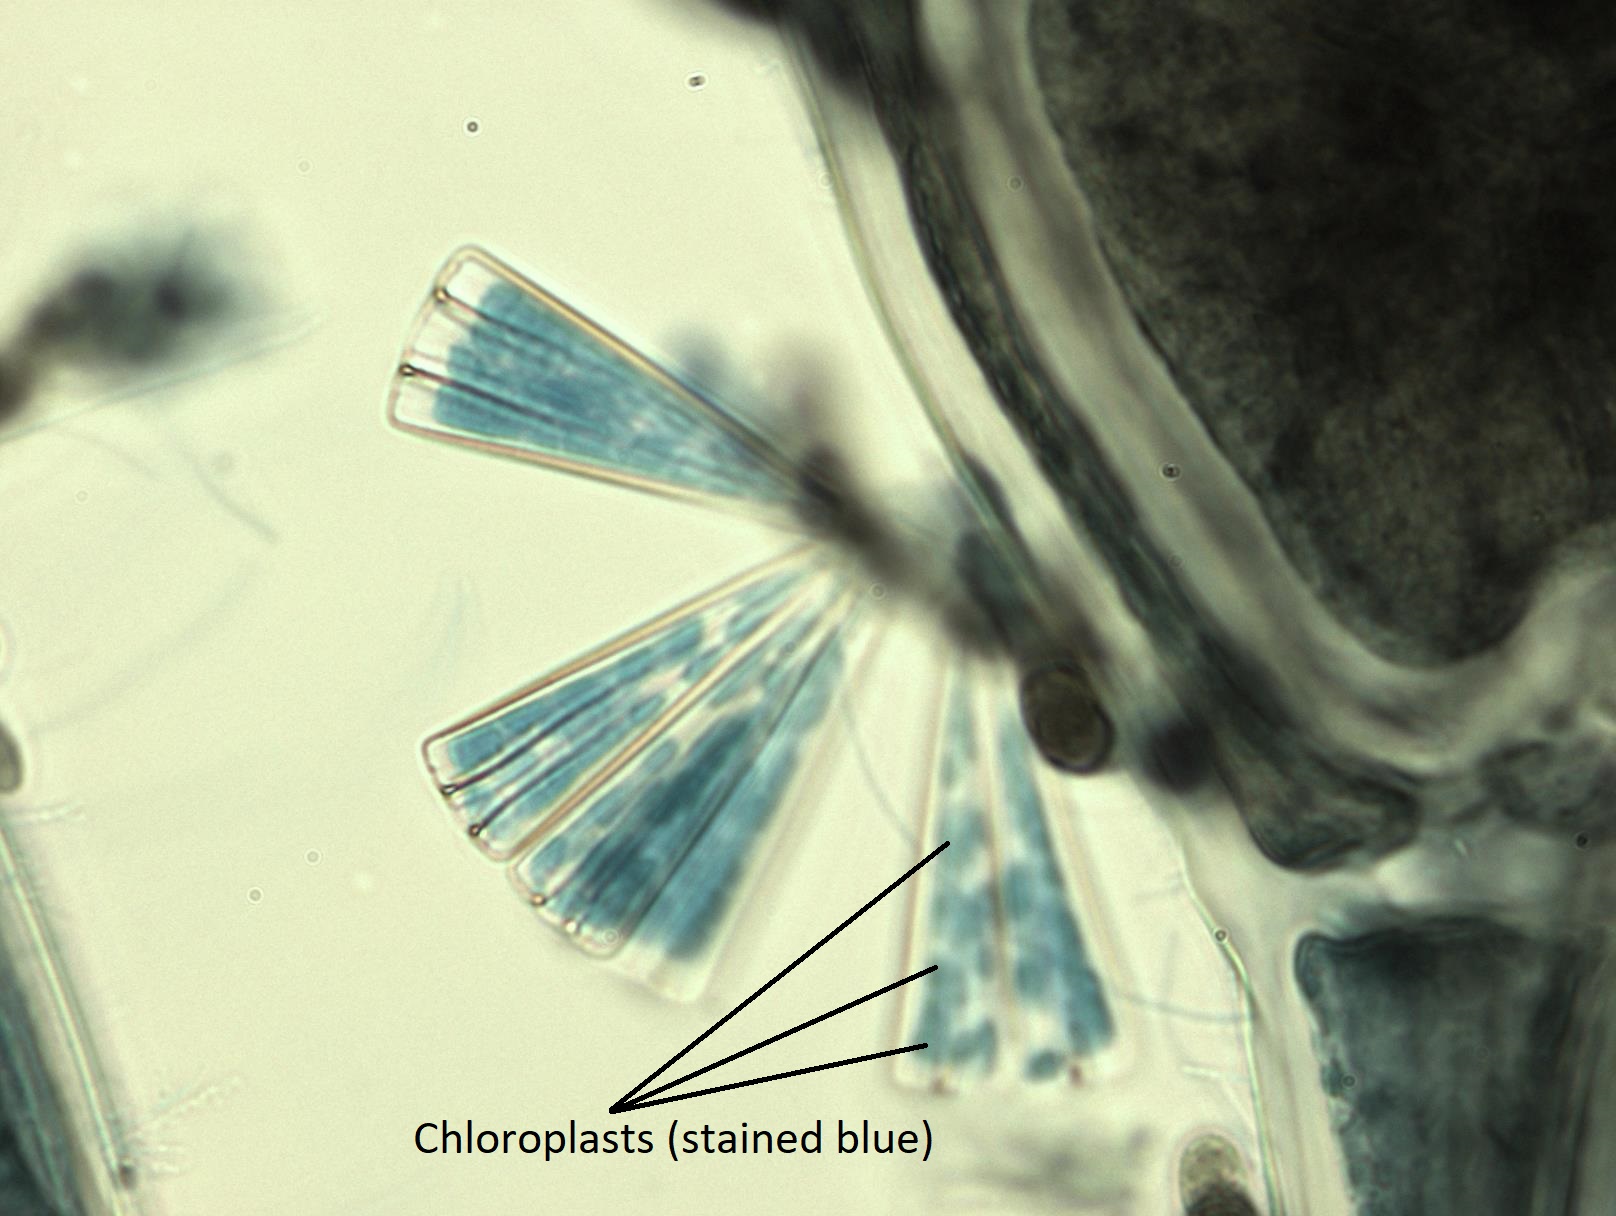 Diatomeas epífitas unidas a un alga roja. Los cloroplastos se tiñen de azul y se indican en la imagen.